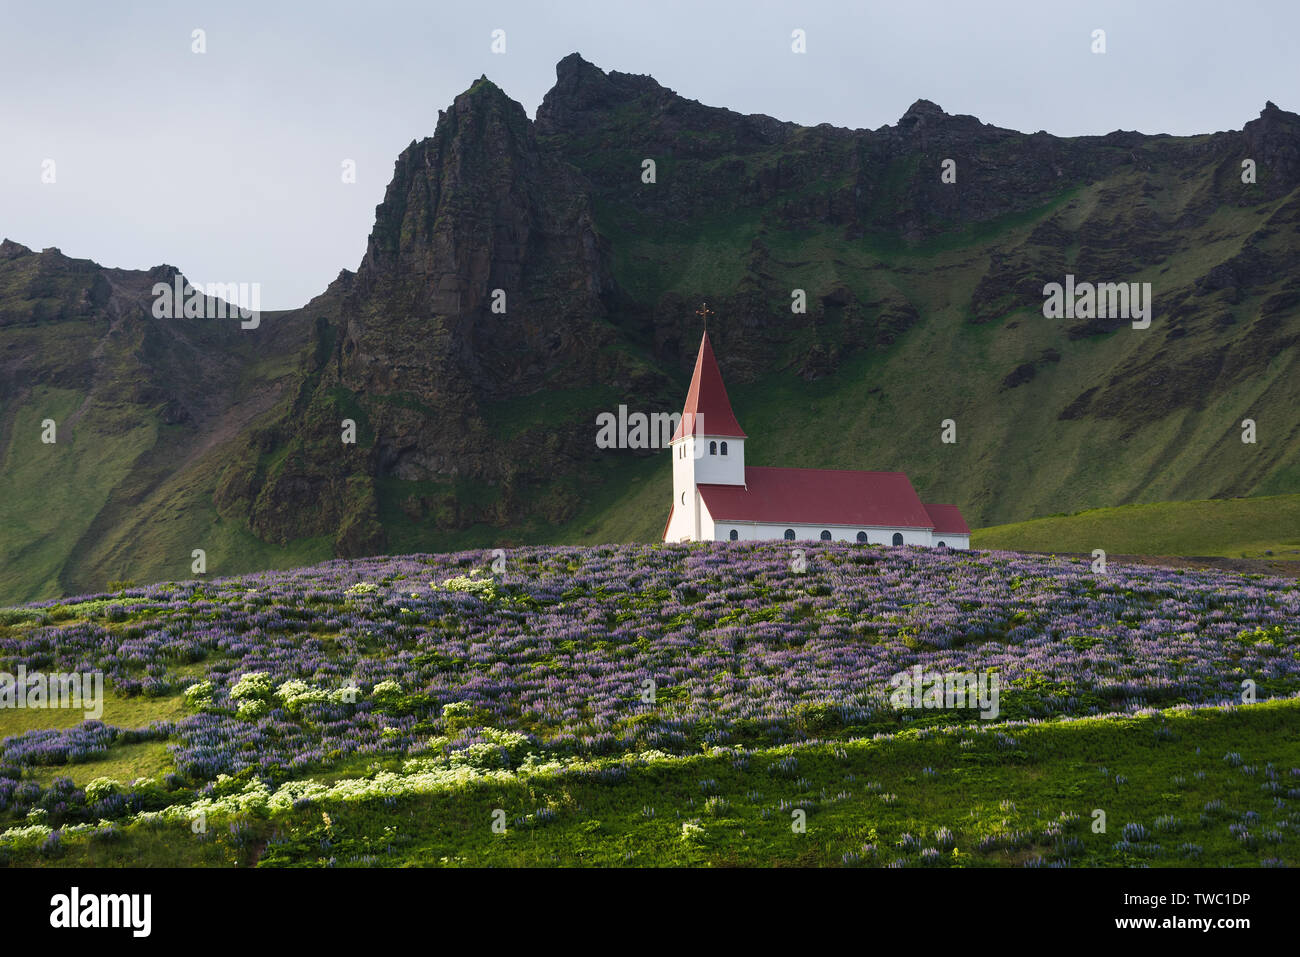 Kirche auf einem Hügel in der VIK-Stadt. Beliebte Touristenattraktion von Island. Glade von Lupine Blumen. Welt der Schönheit Stockfoto